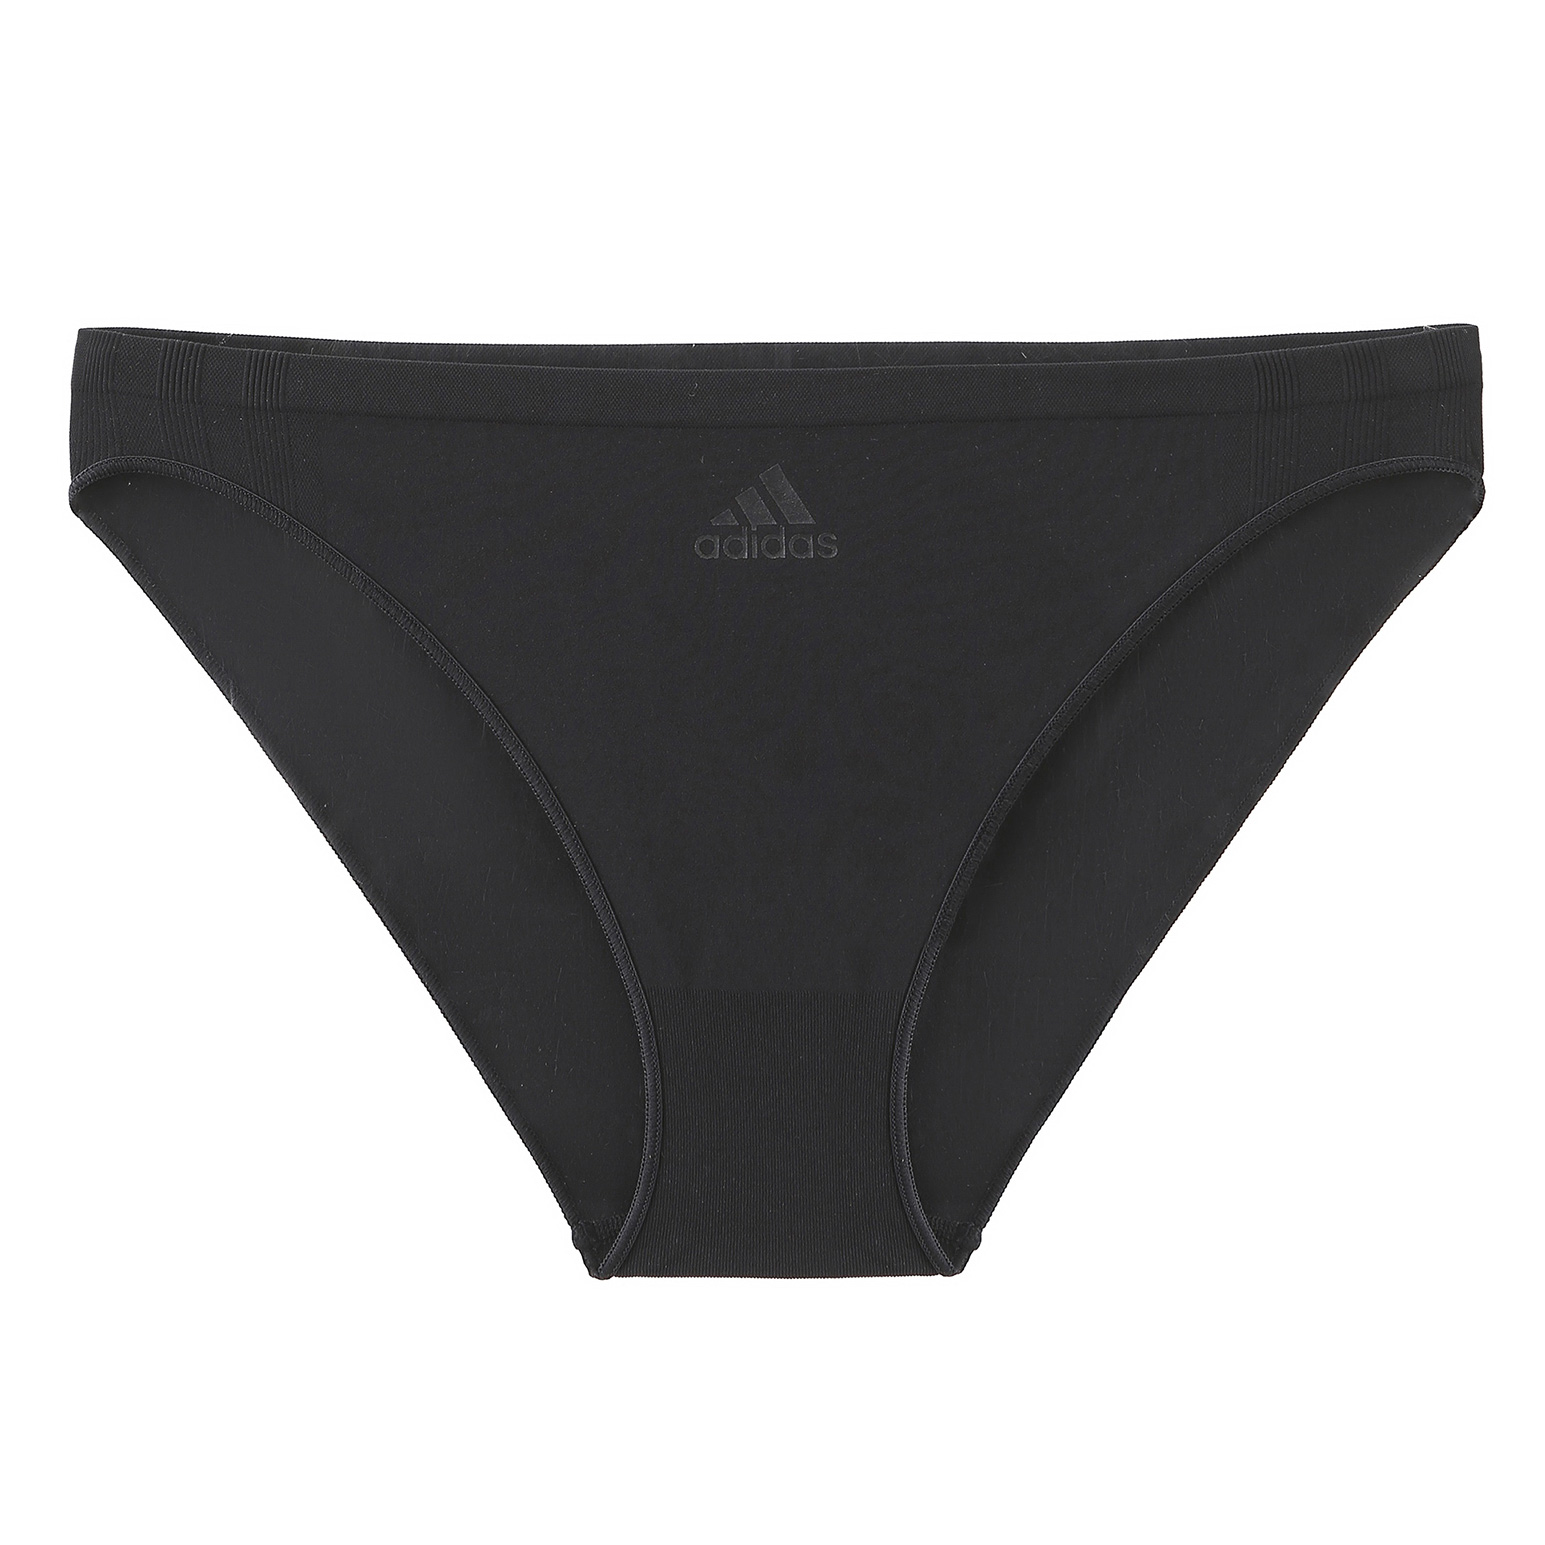 Produktbild von adidas Sports Underwear Low Rise Bikini Unterhose Damen - 000-schwarz